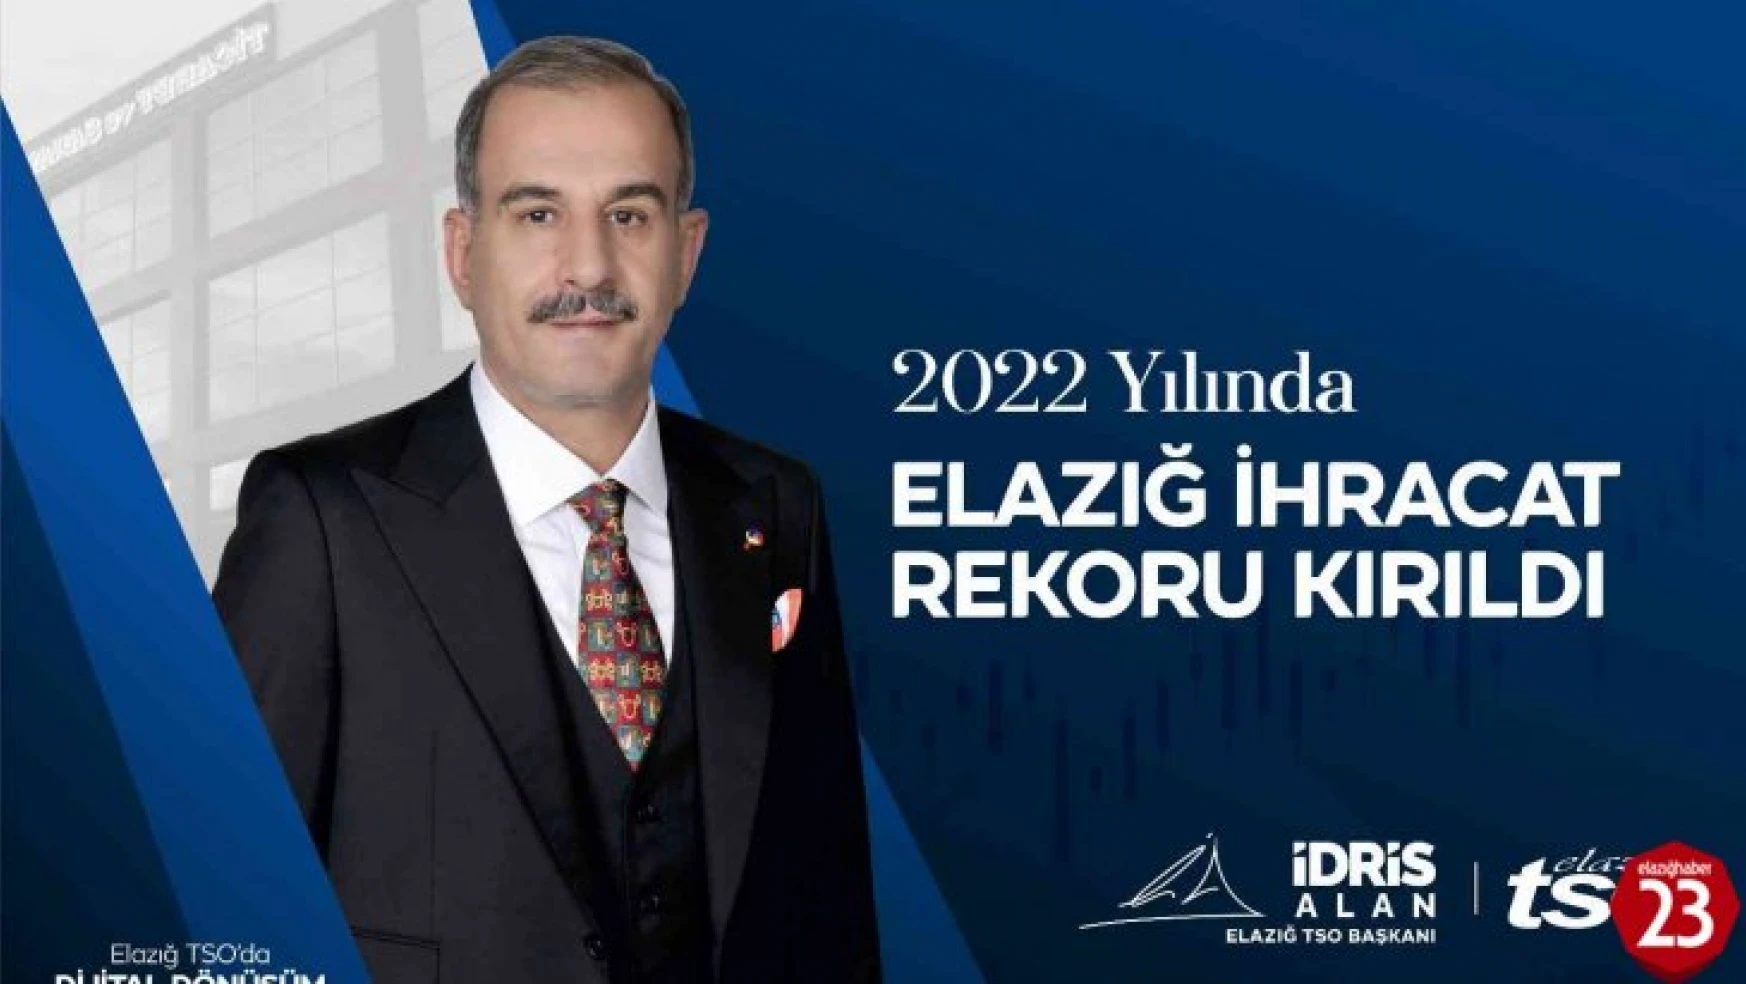 Başkan Alan, 'Elazığ, Cumhuriyetimizin 100. yılında, 2022 yılında kırdığı ihracat rekorunu geliştirecektir'